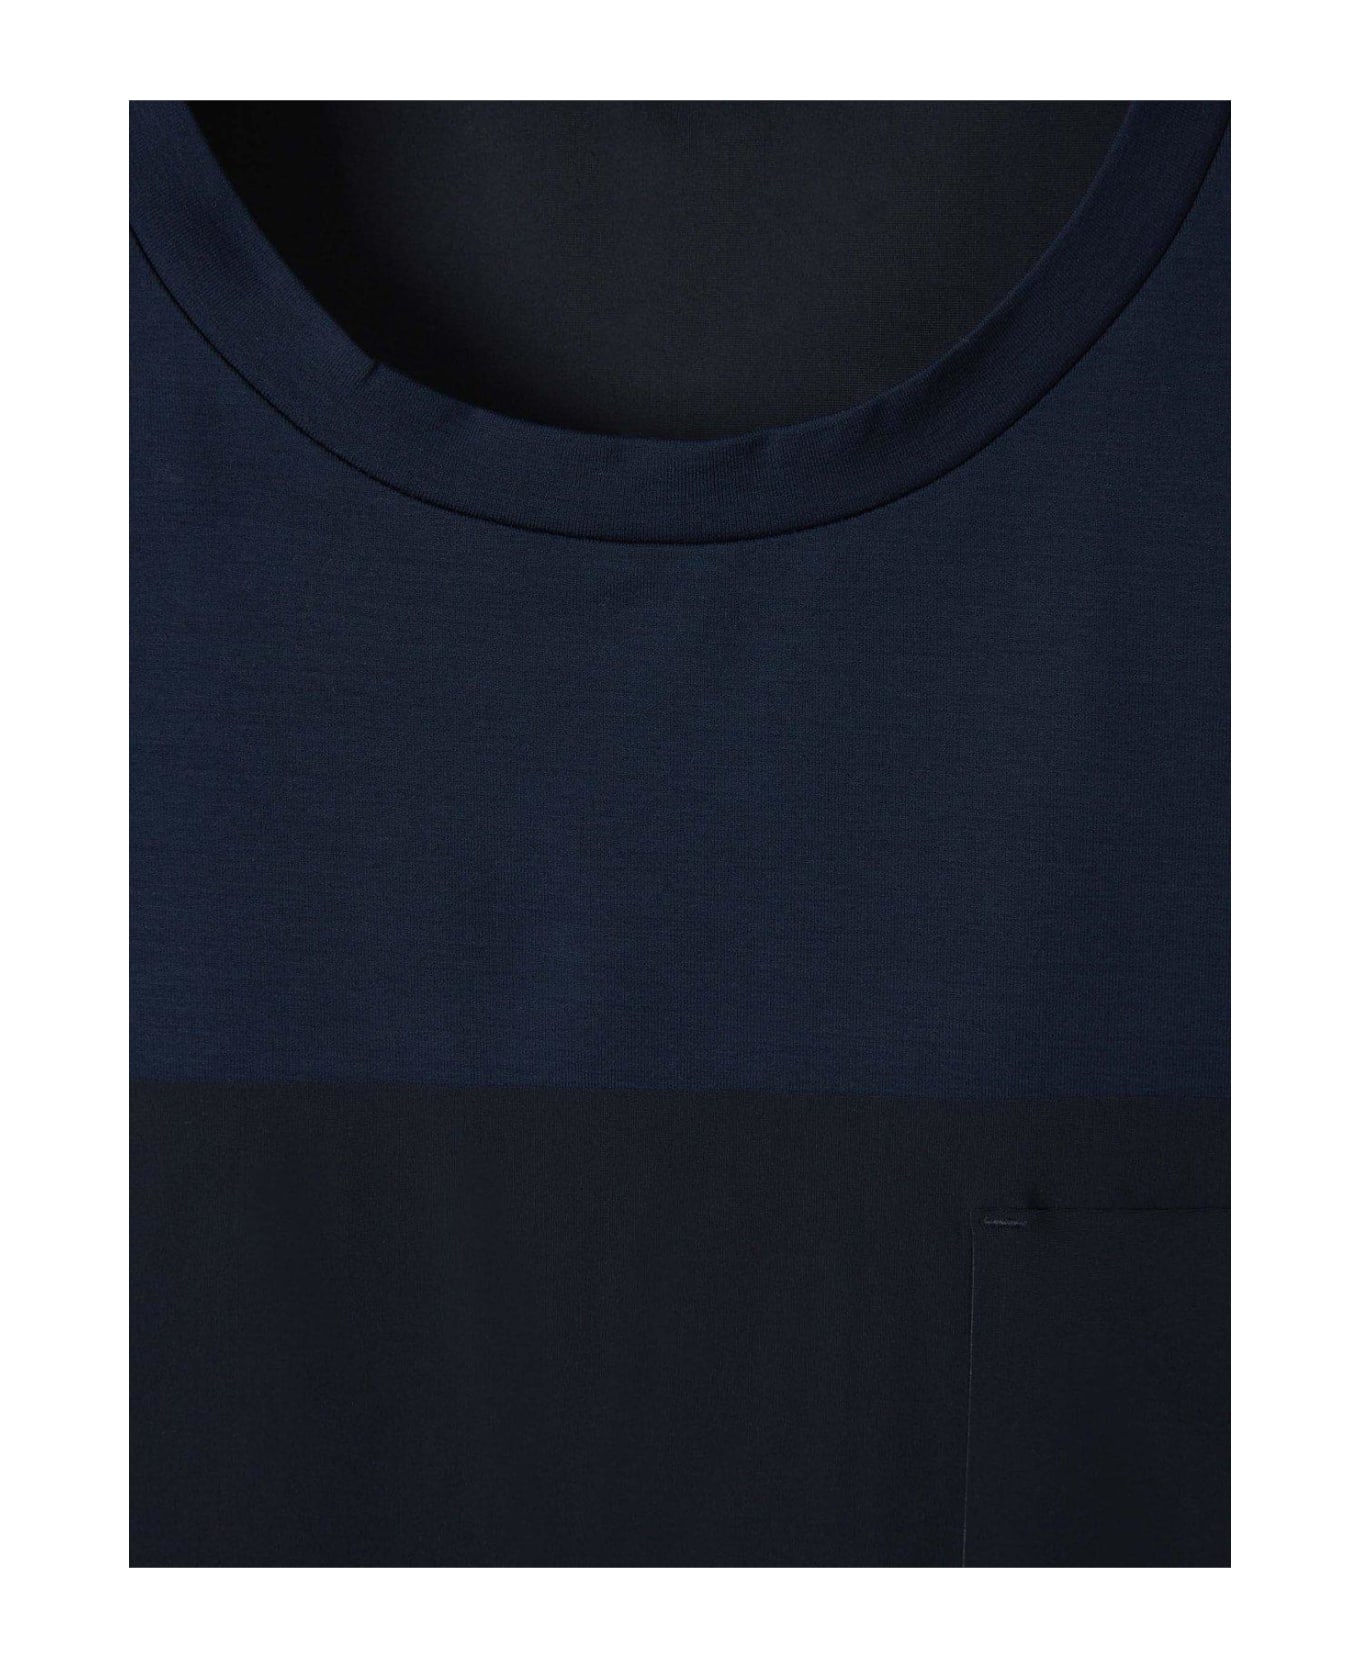 Herno Short Sleeved Crewneck T-shirt Herno - BLUE